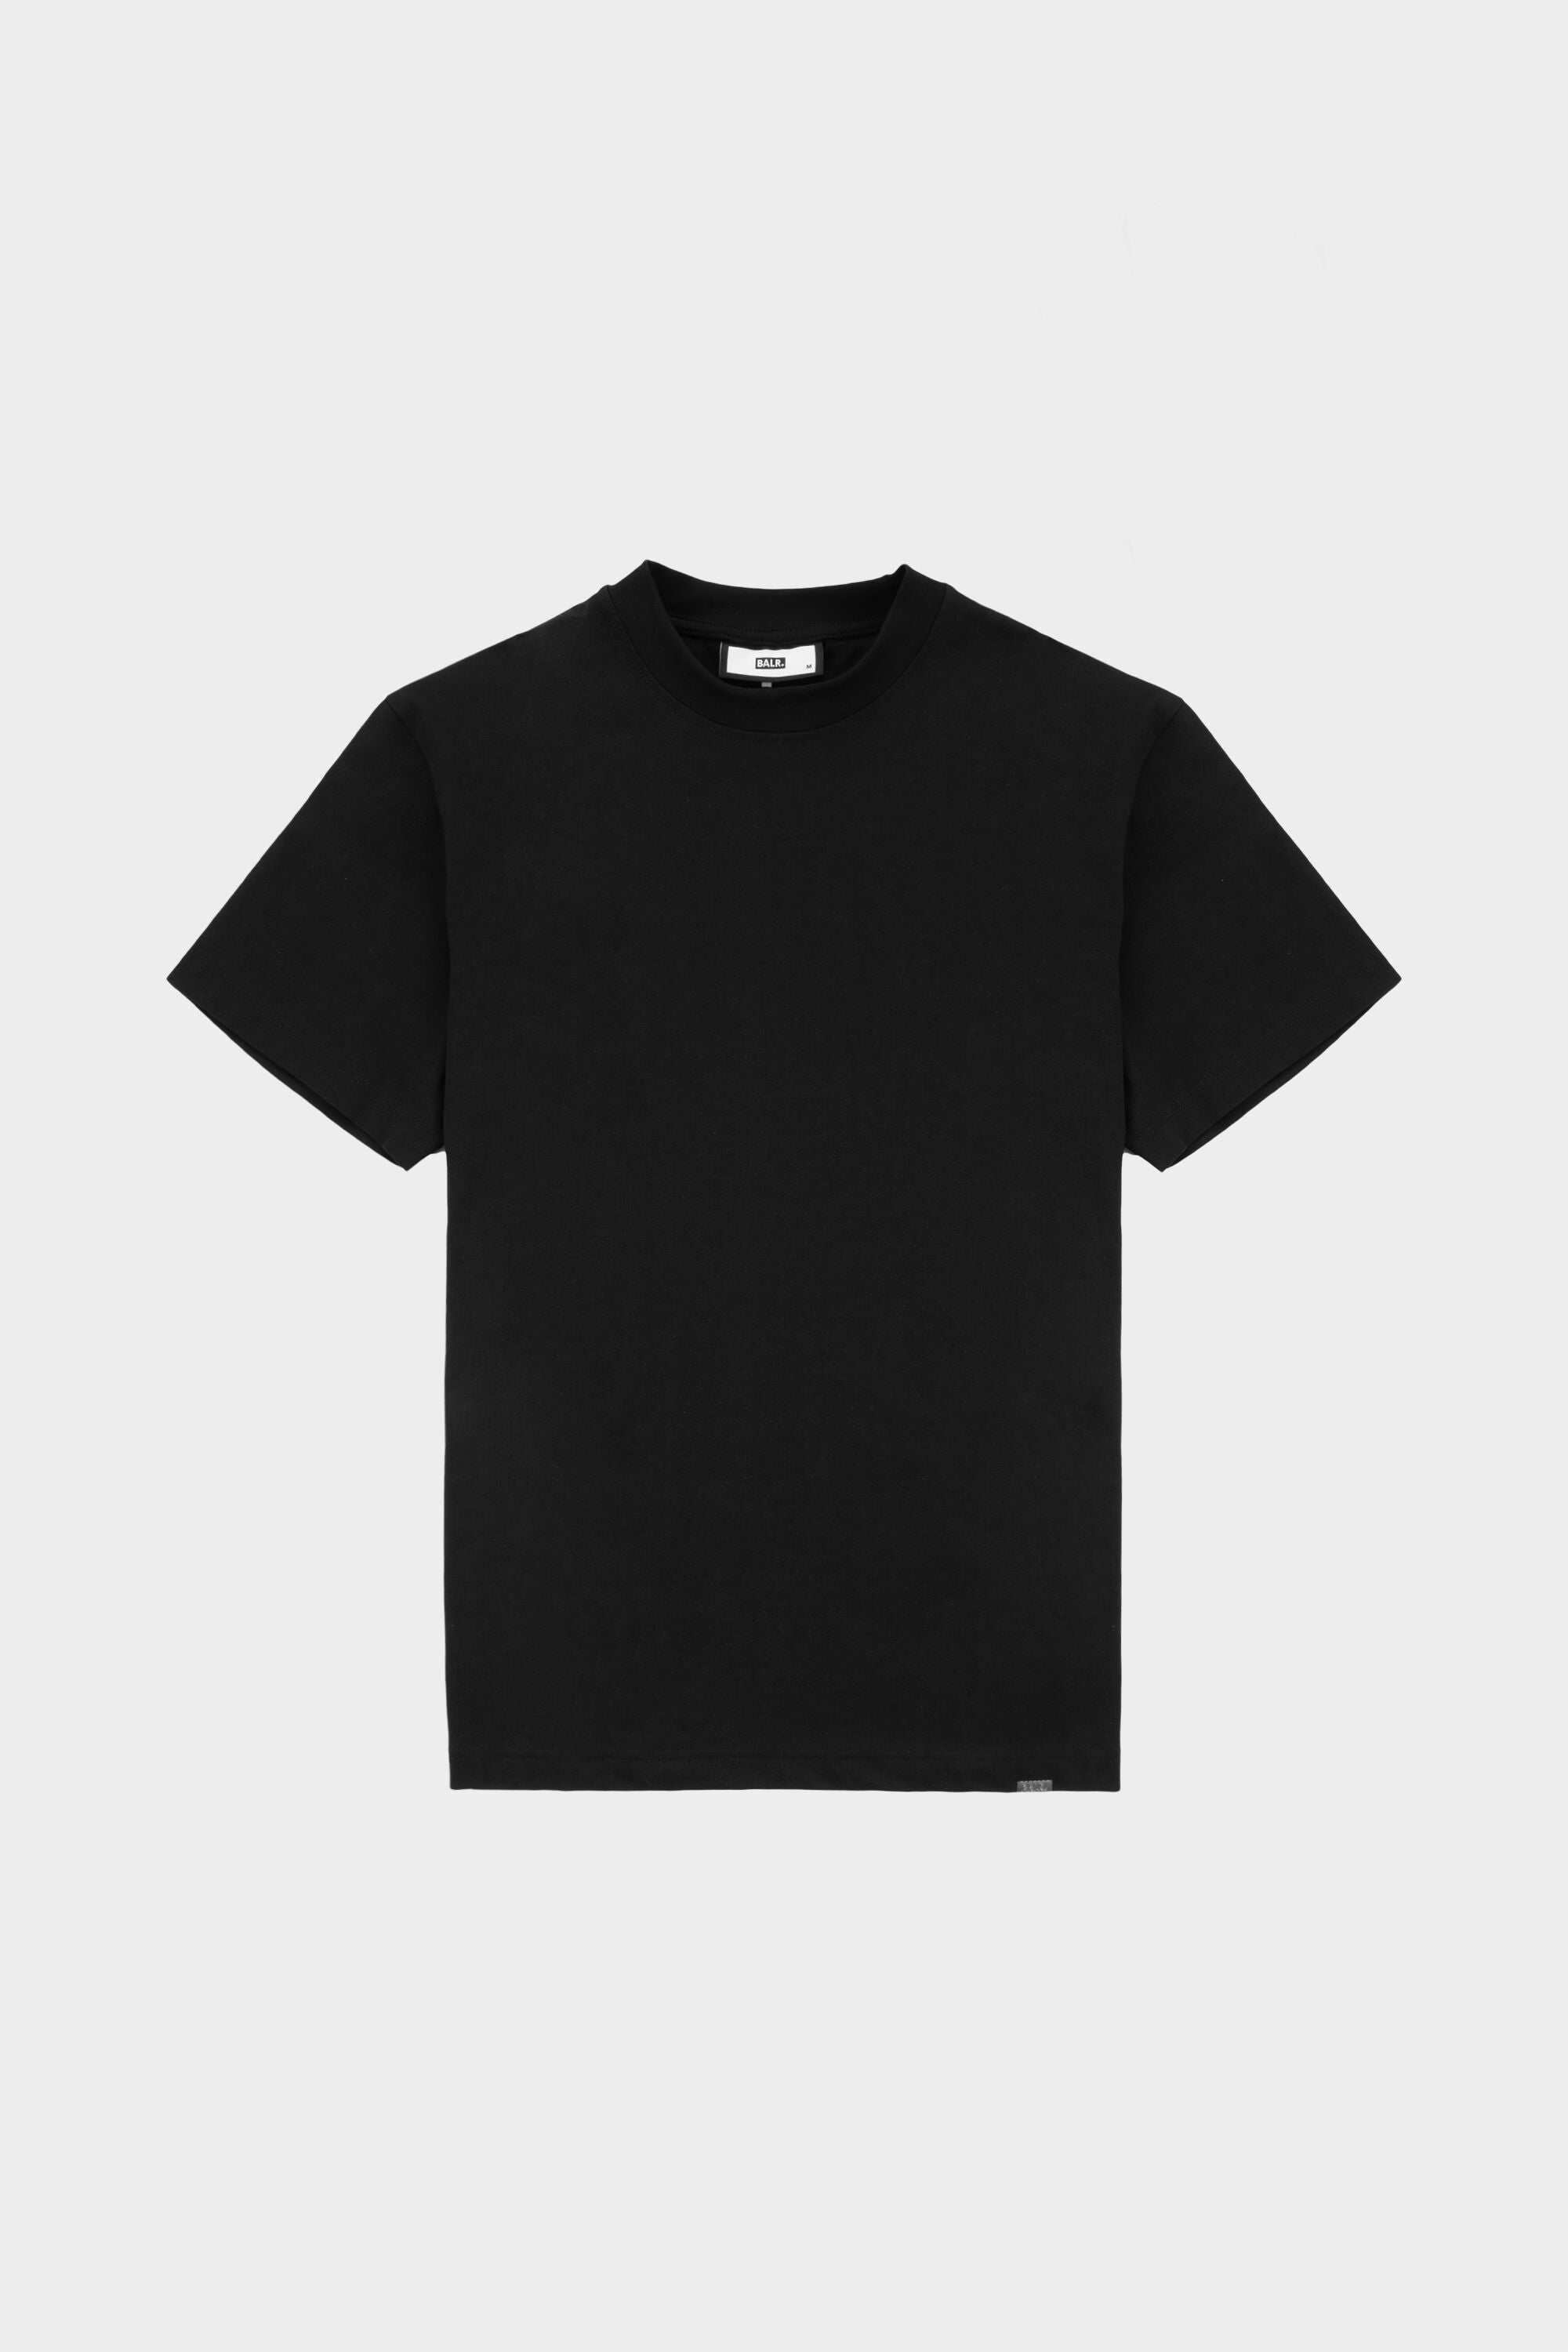 Blanks Box T-Shirt Jet Black